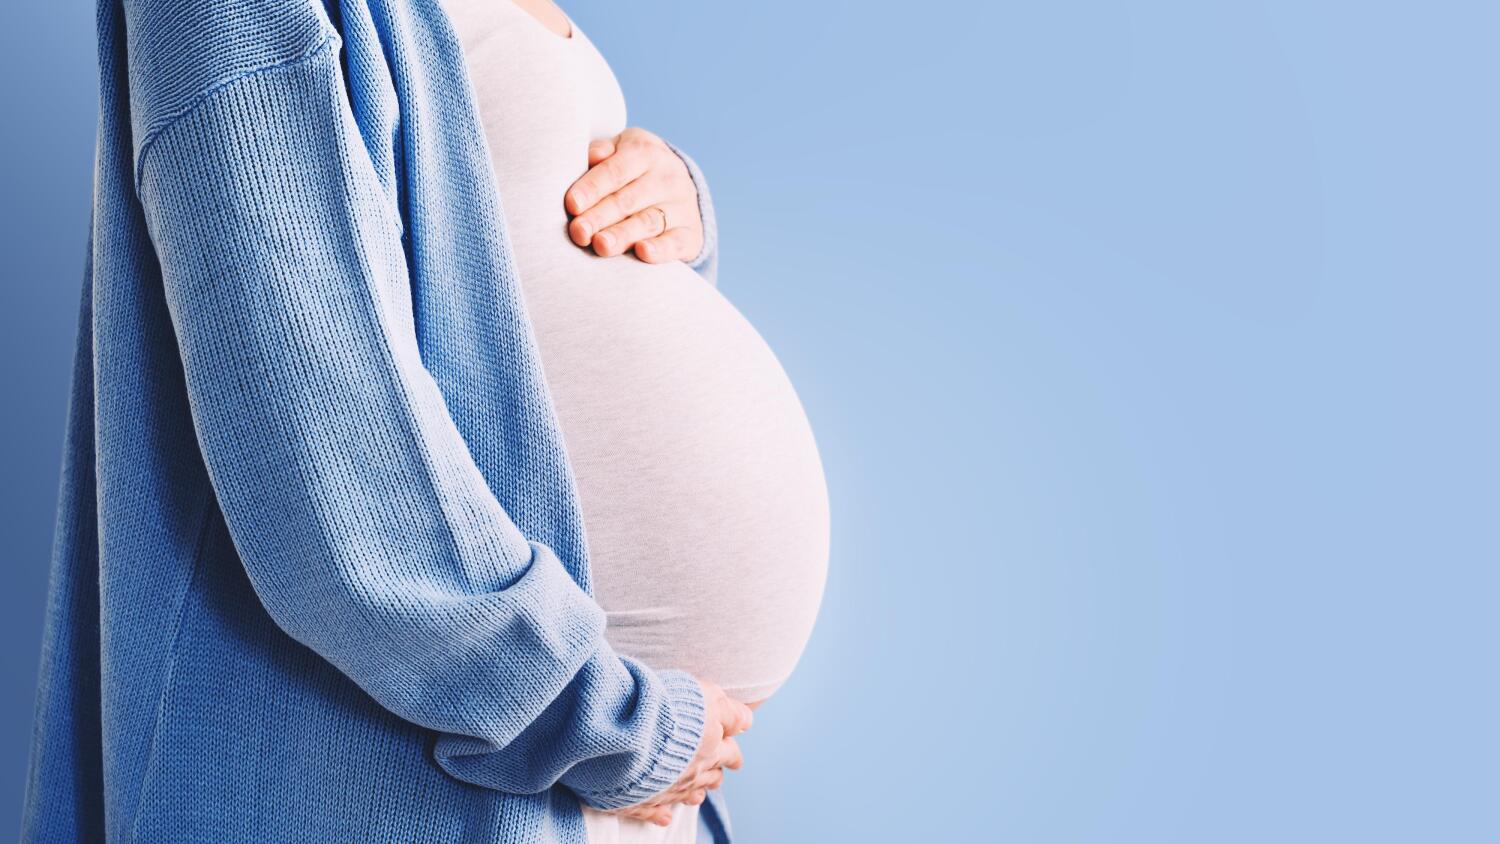 uutta tutkimustietoa parasetamolin käytön riskeistä raskauden aikana - kumoaa aikaisempia tuloksia